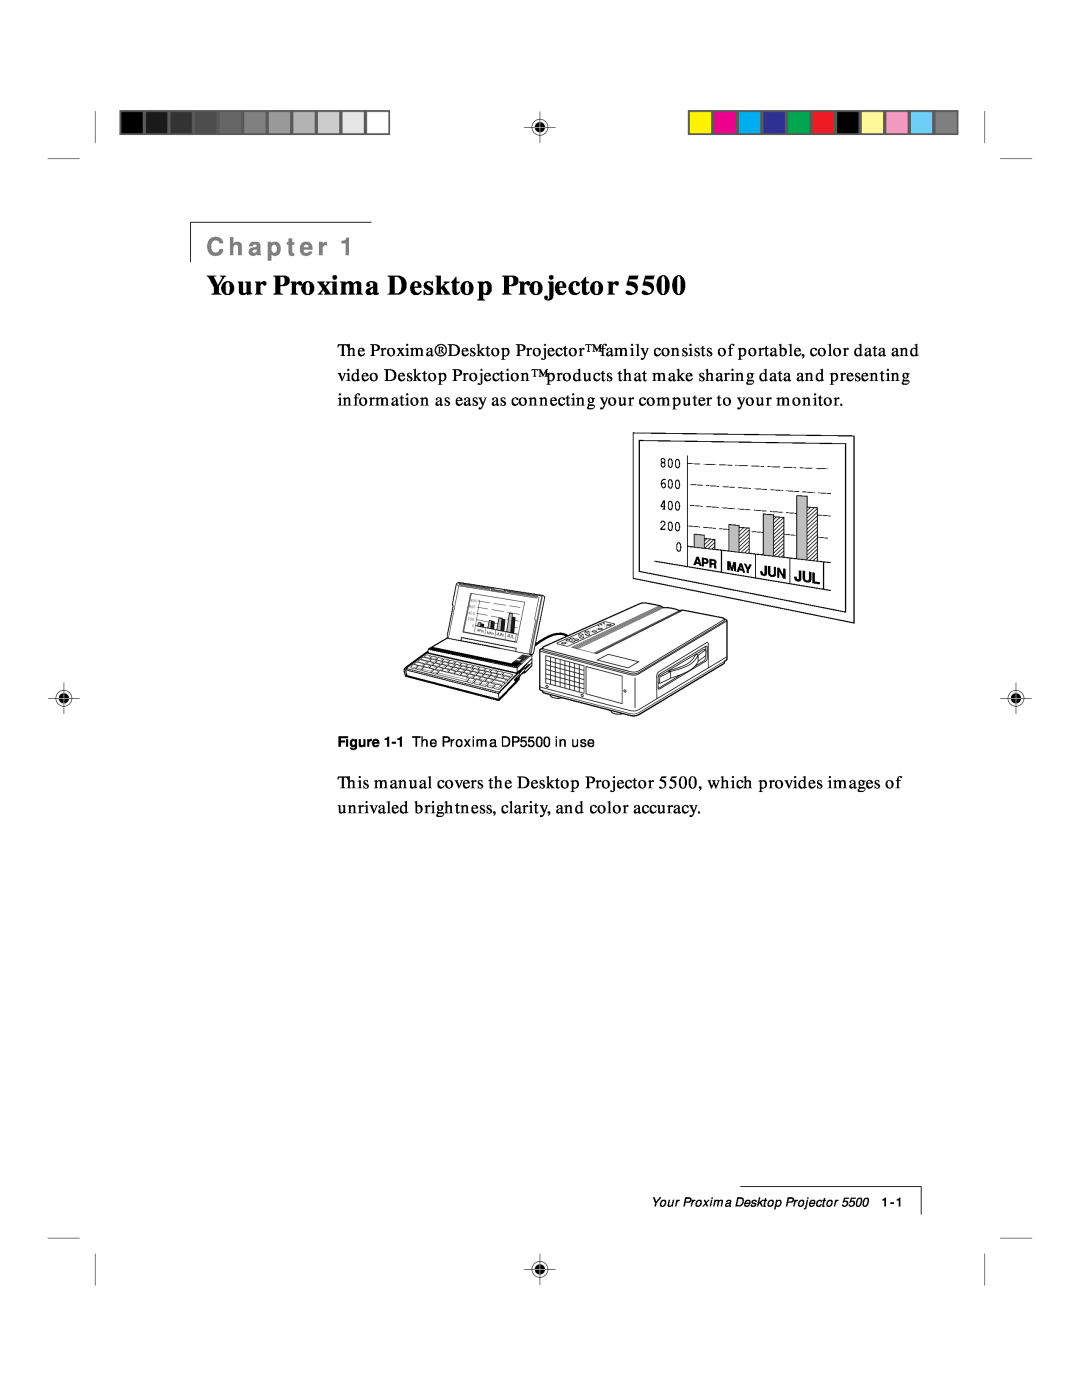 Proxima ASA DP5500 manual Your Proxima Desktop Projector, Chapter 